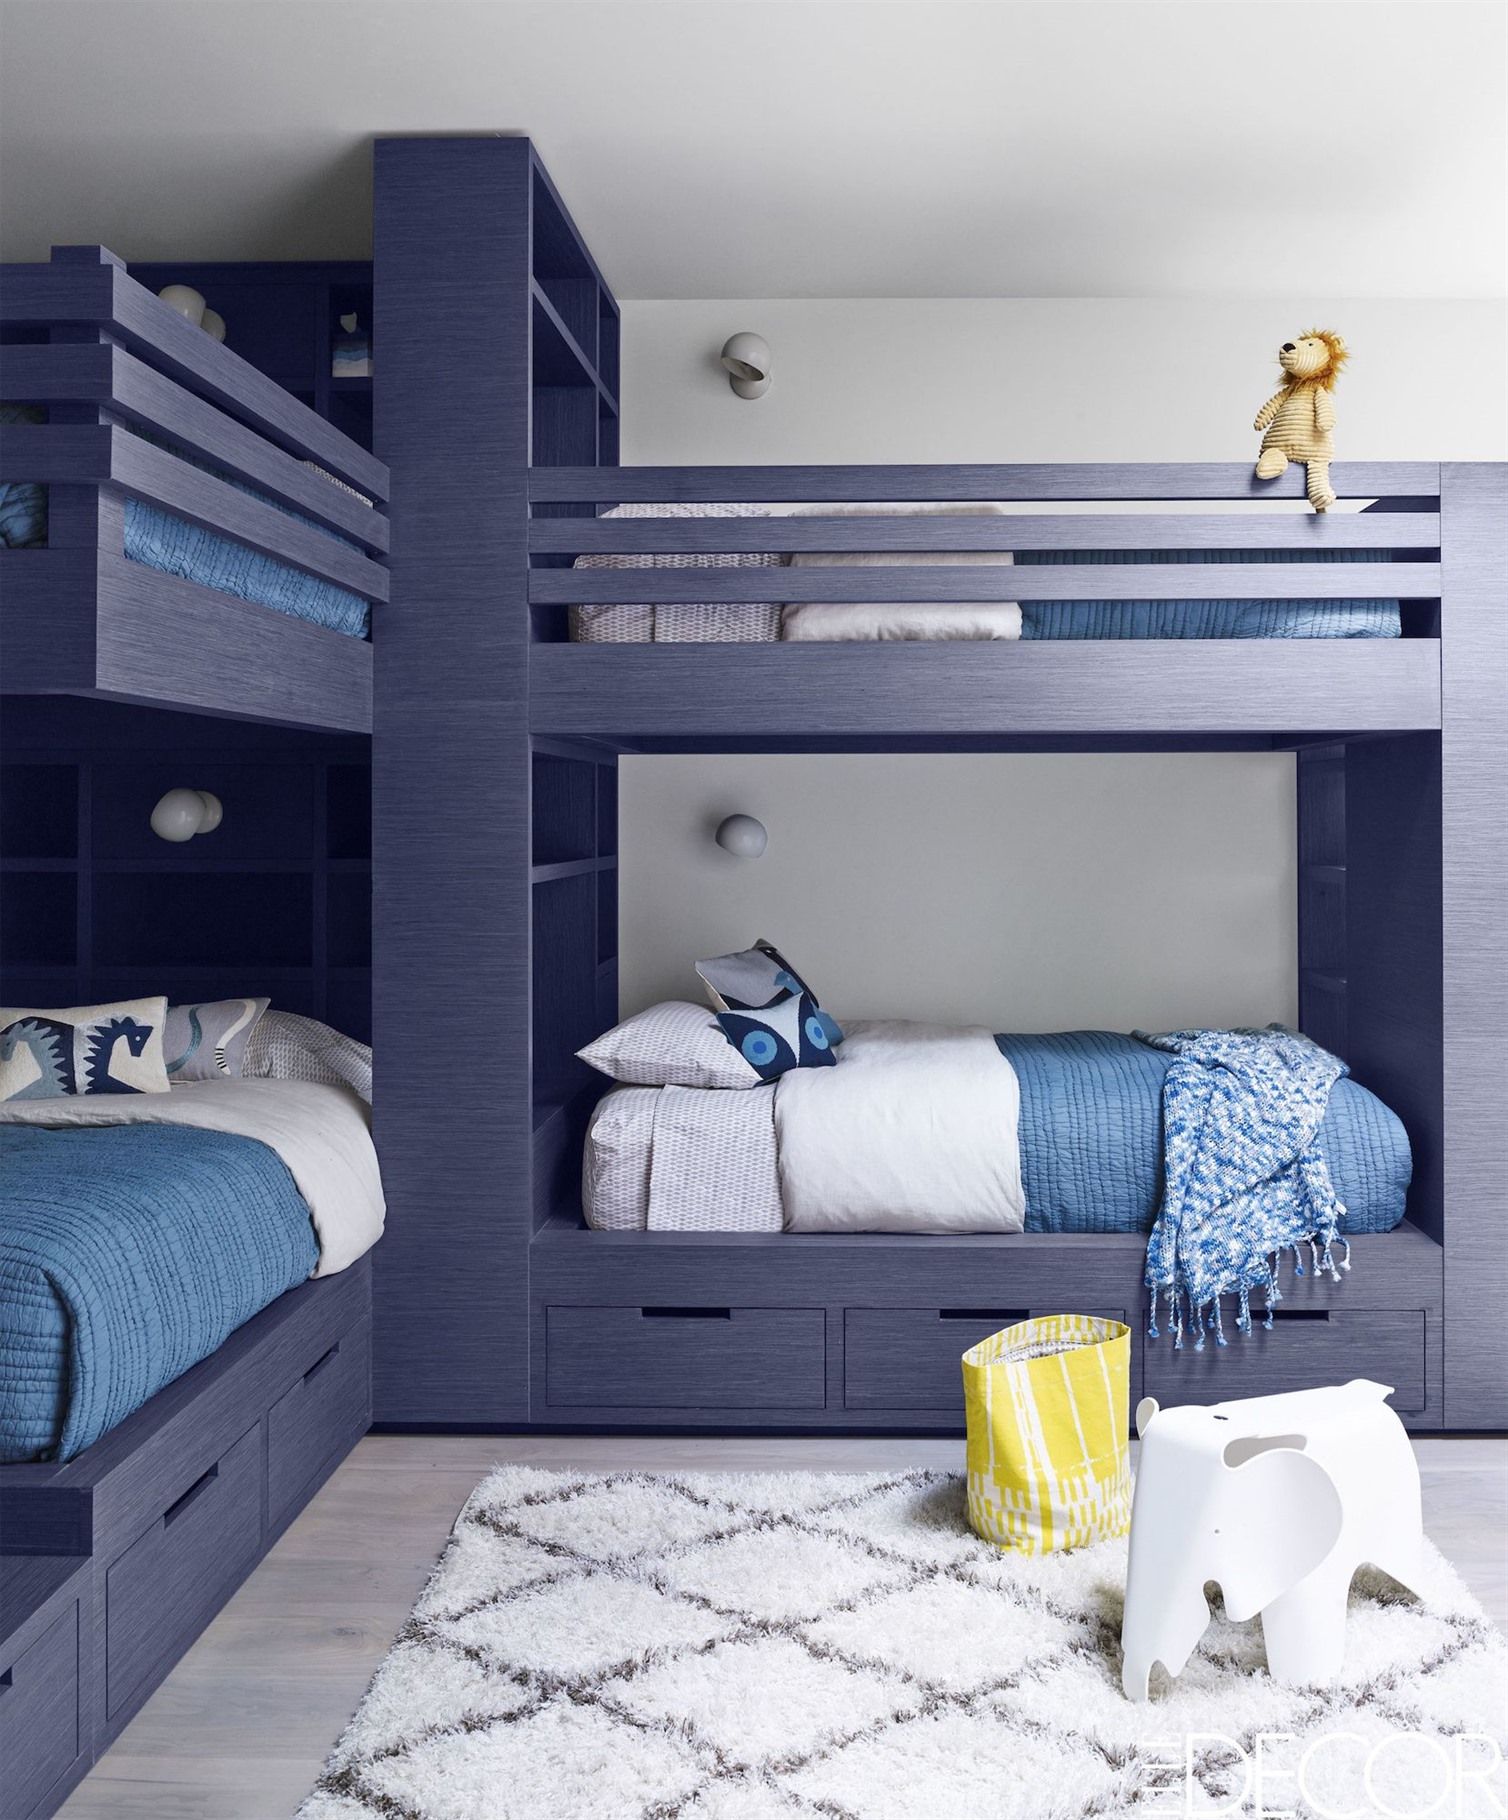 Спальня с двухъярусной кроватью для девочки и мальчика